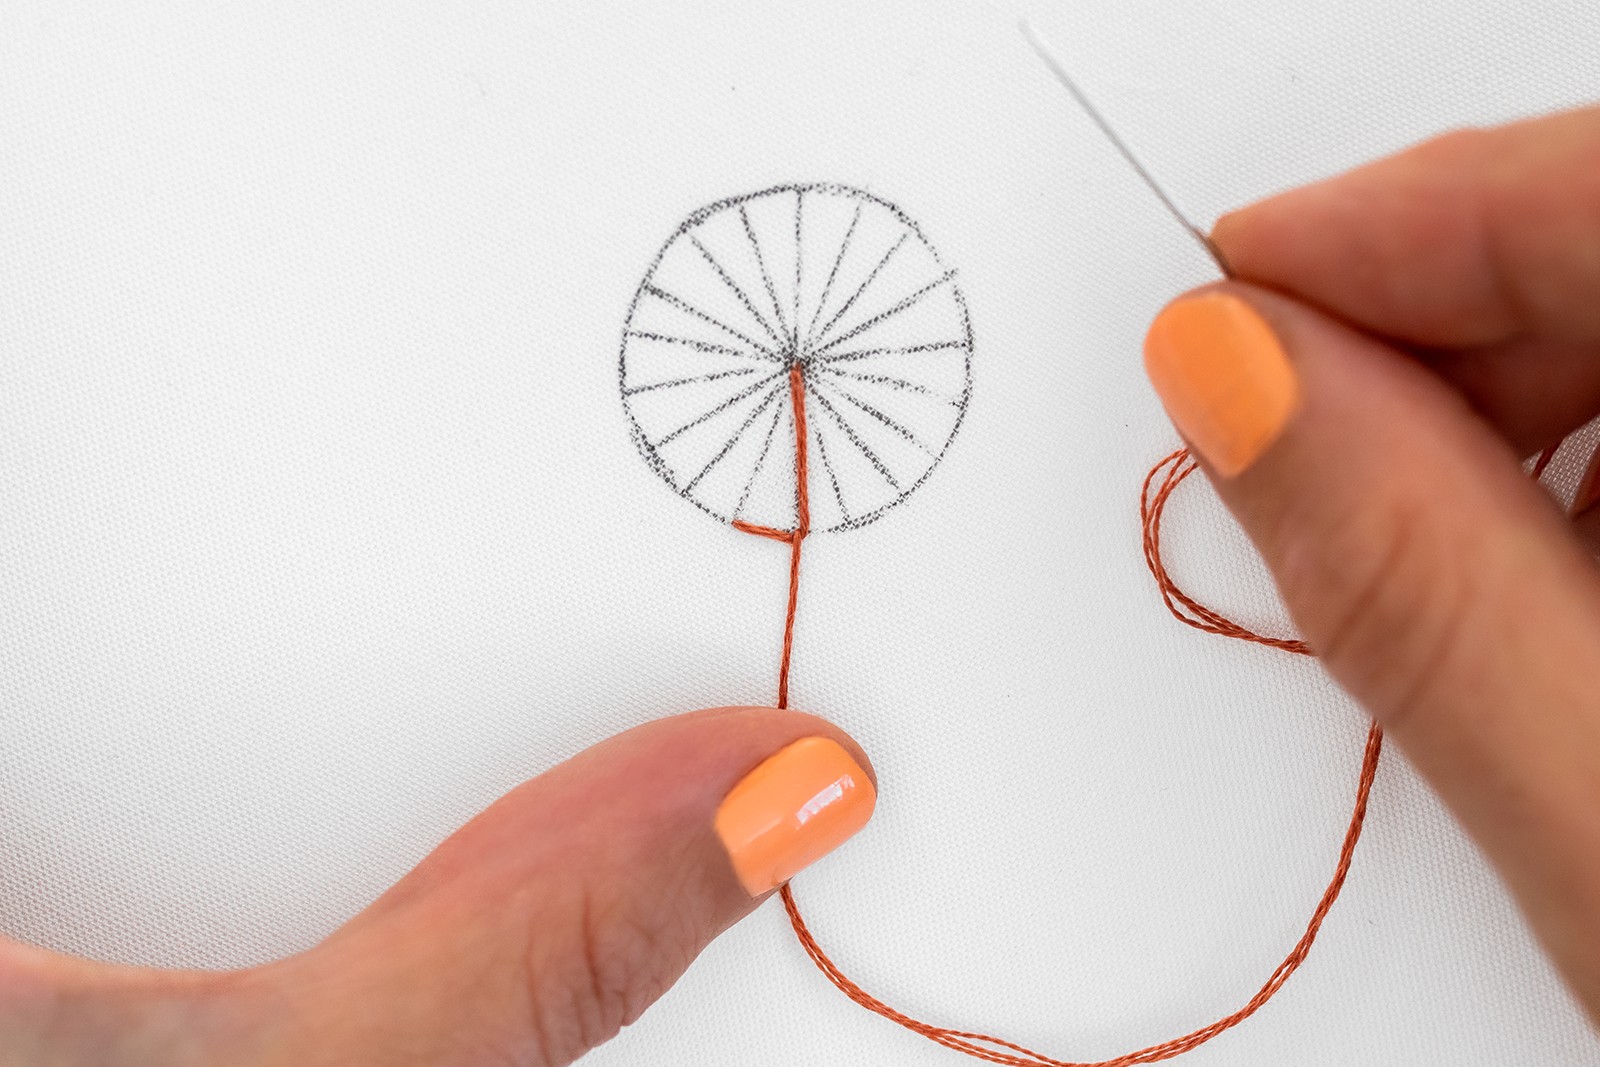 A hand presses a thread down on a button wheel shape.